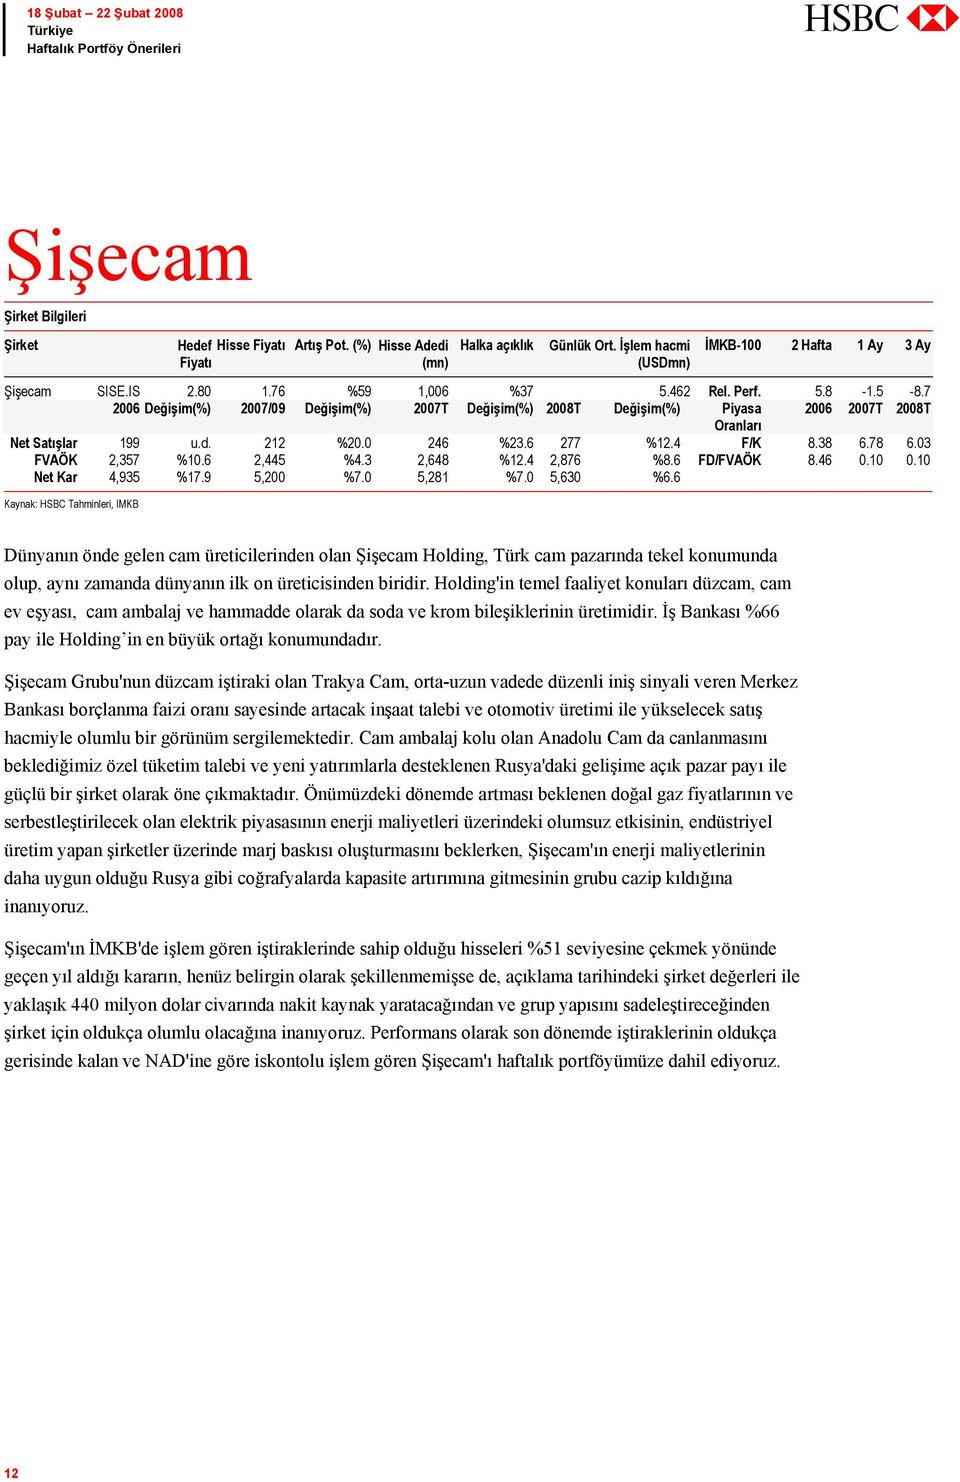 6 Kaynak: HSBC Tahminleri, IMKB Dünyanın önde gelen cam üreticilerinden olan Şişecam Holding, Türk cam pazarında tekel konumunda olup, aynı zamanda dünyanın ilk on üreticisinden biridir.